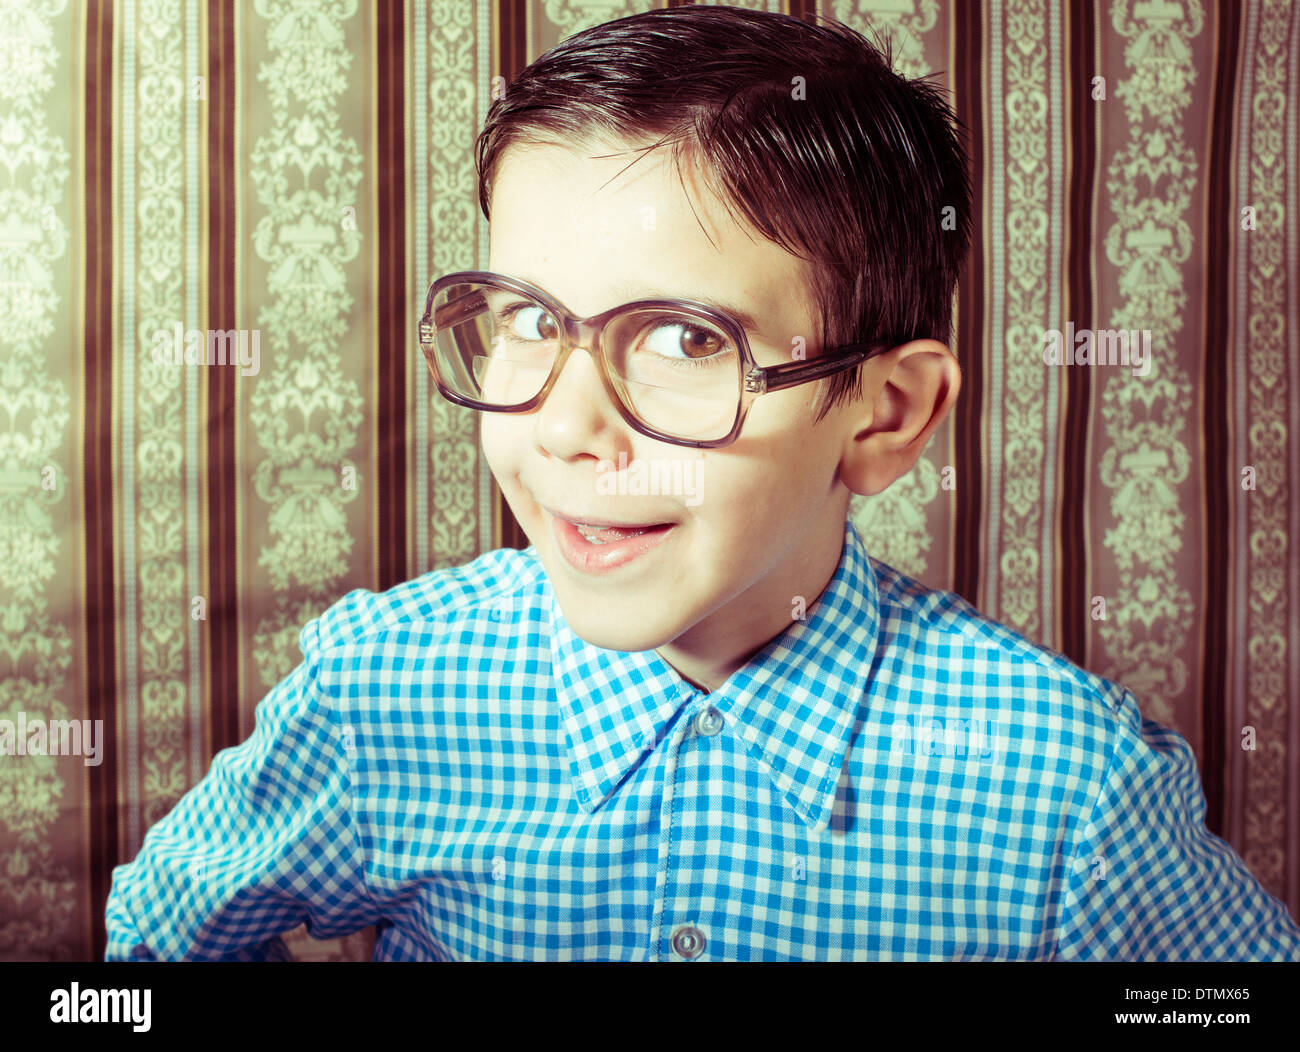 Lächelndes Kind mit Brille in Vintage-Kleidung. Nahaufnahme Schuss Stockfoto